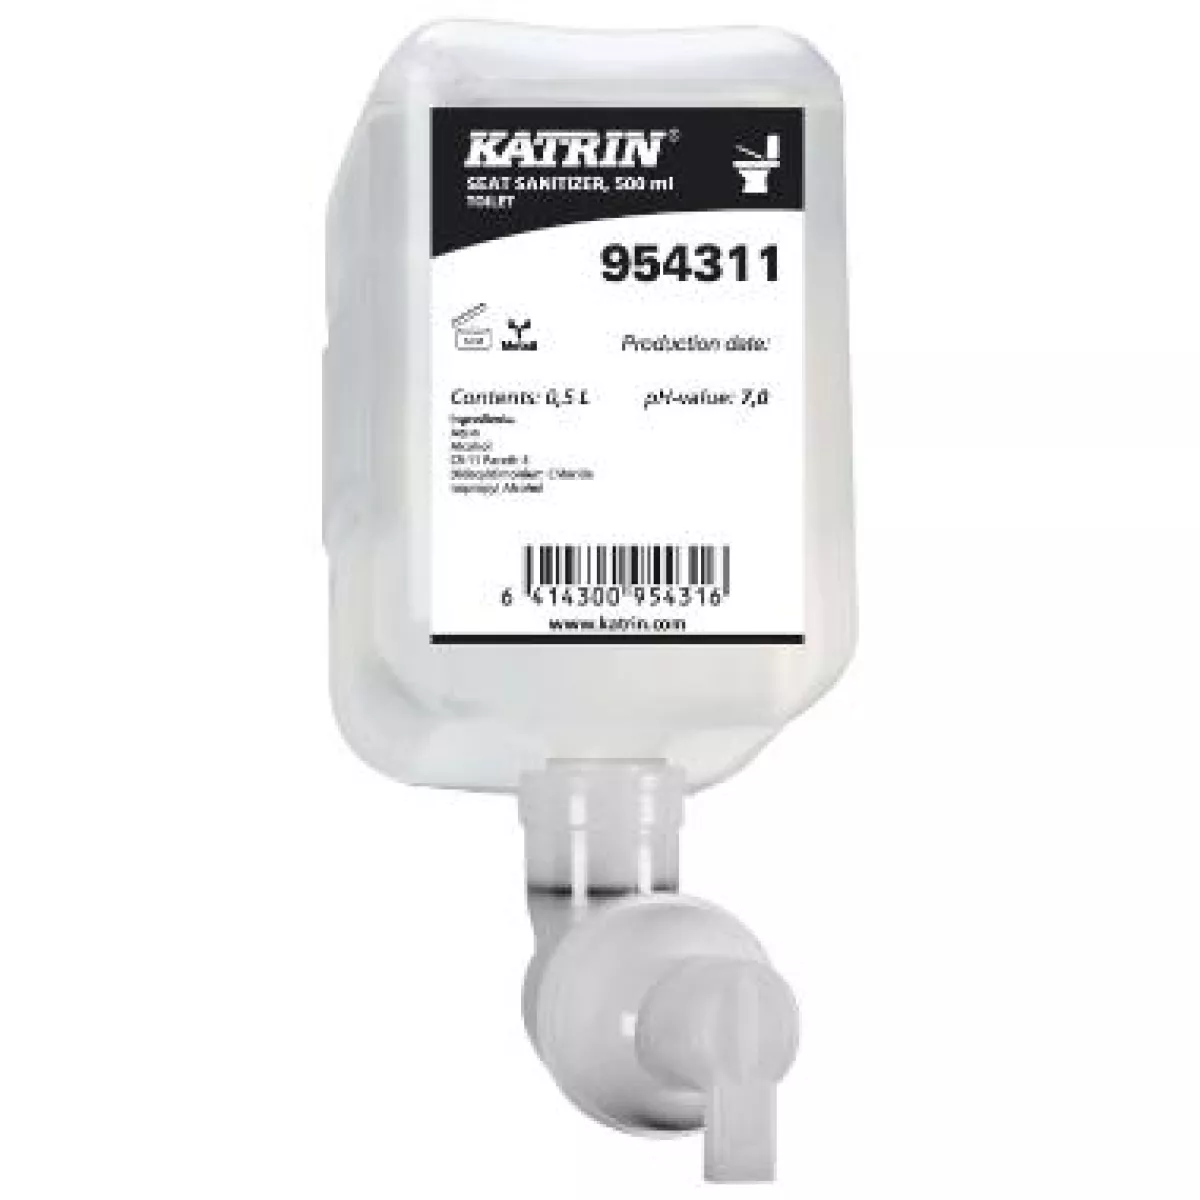 #1 - Katrin Toilet Seat Sanitizer, desinfektion til toiletbræt, 500 ml. refill, 12 stk.